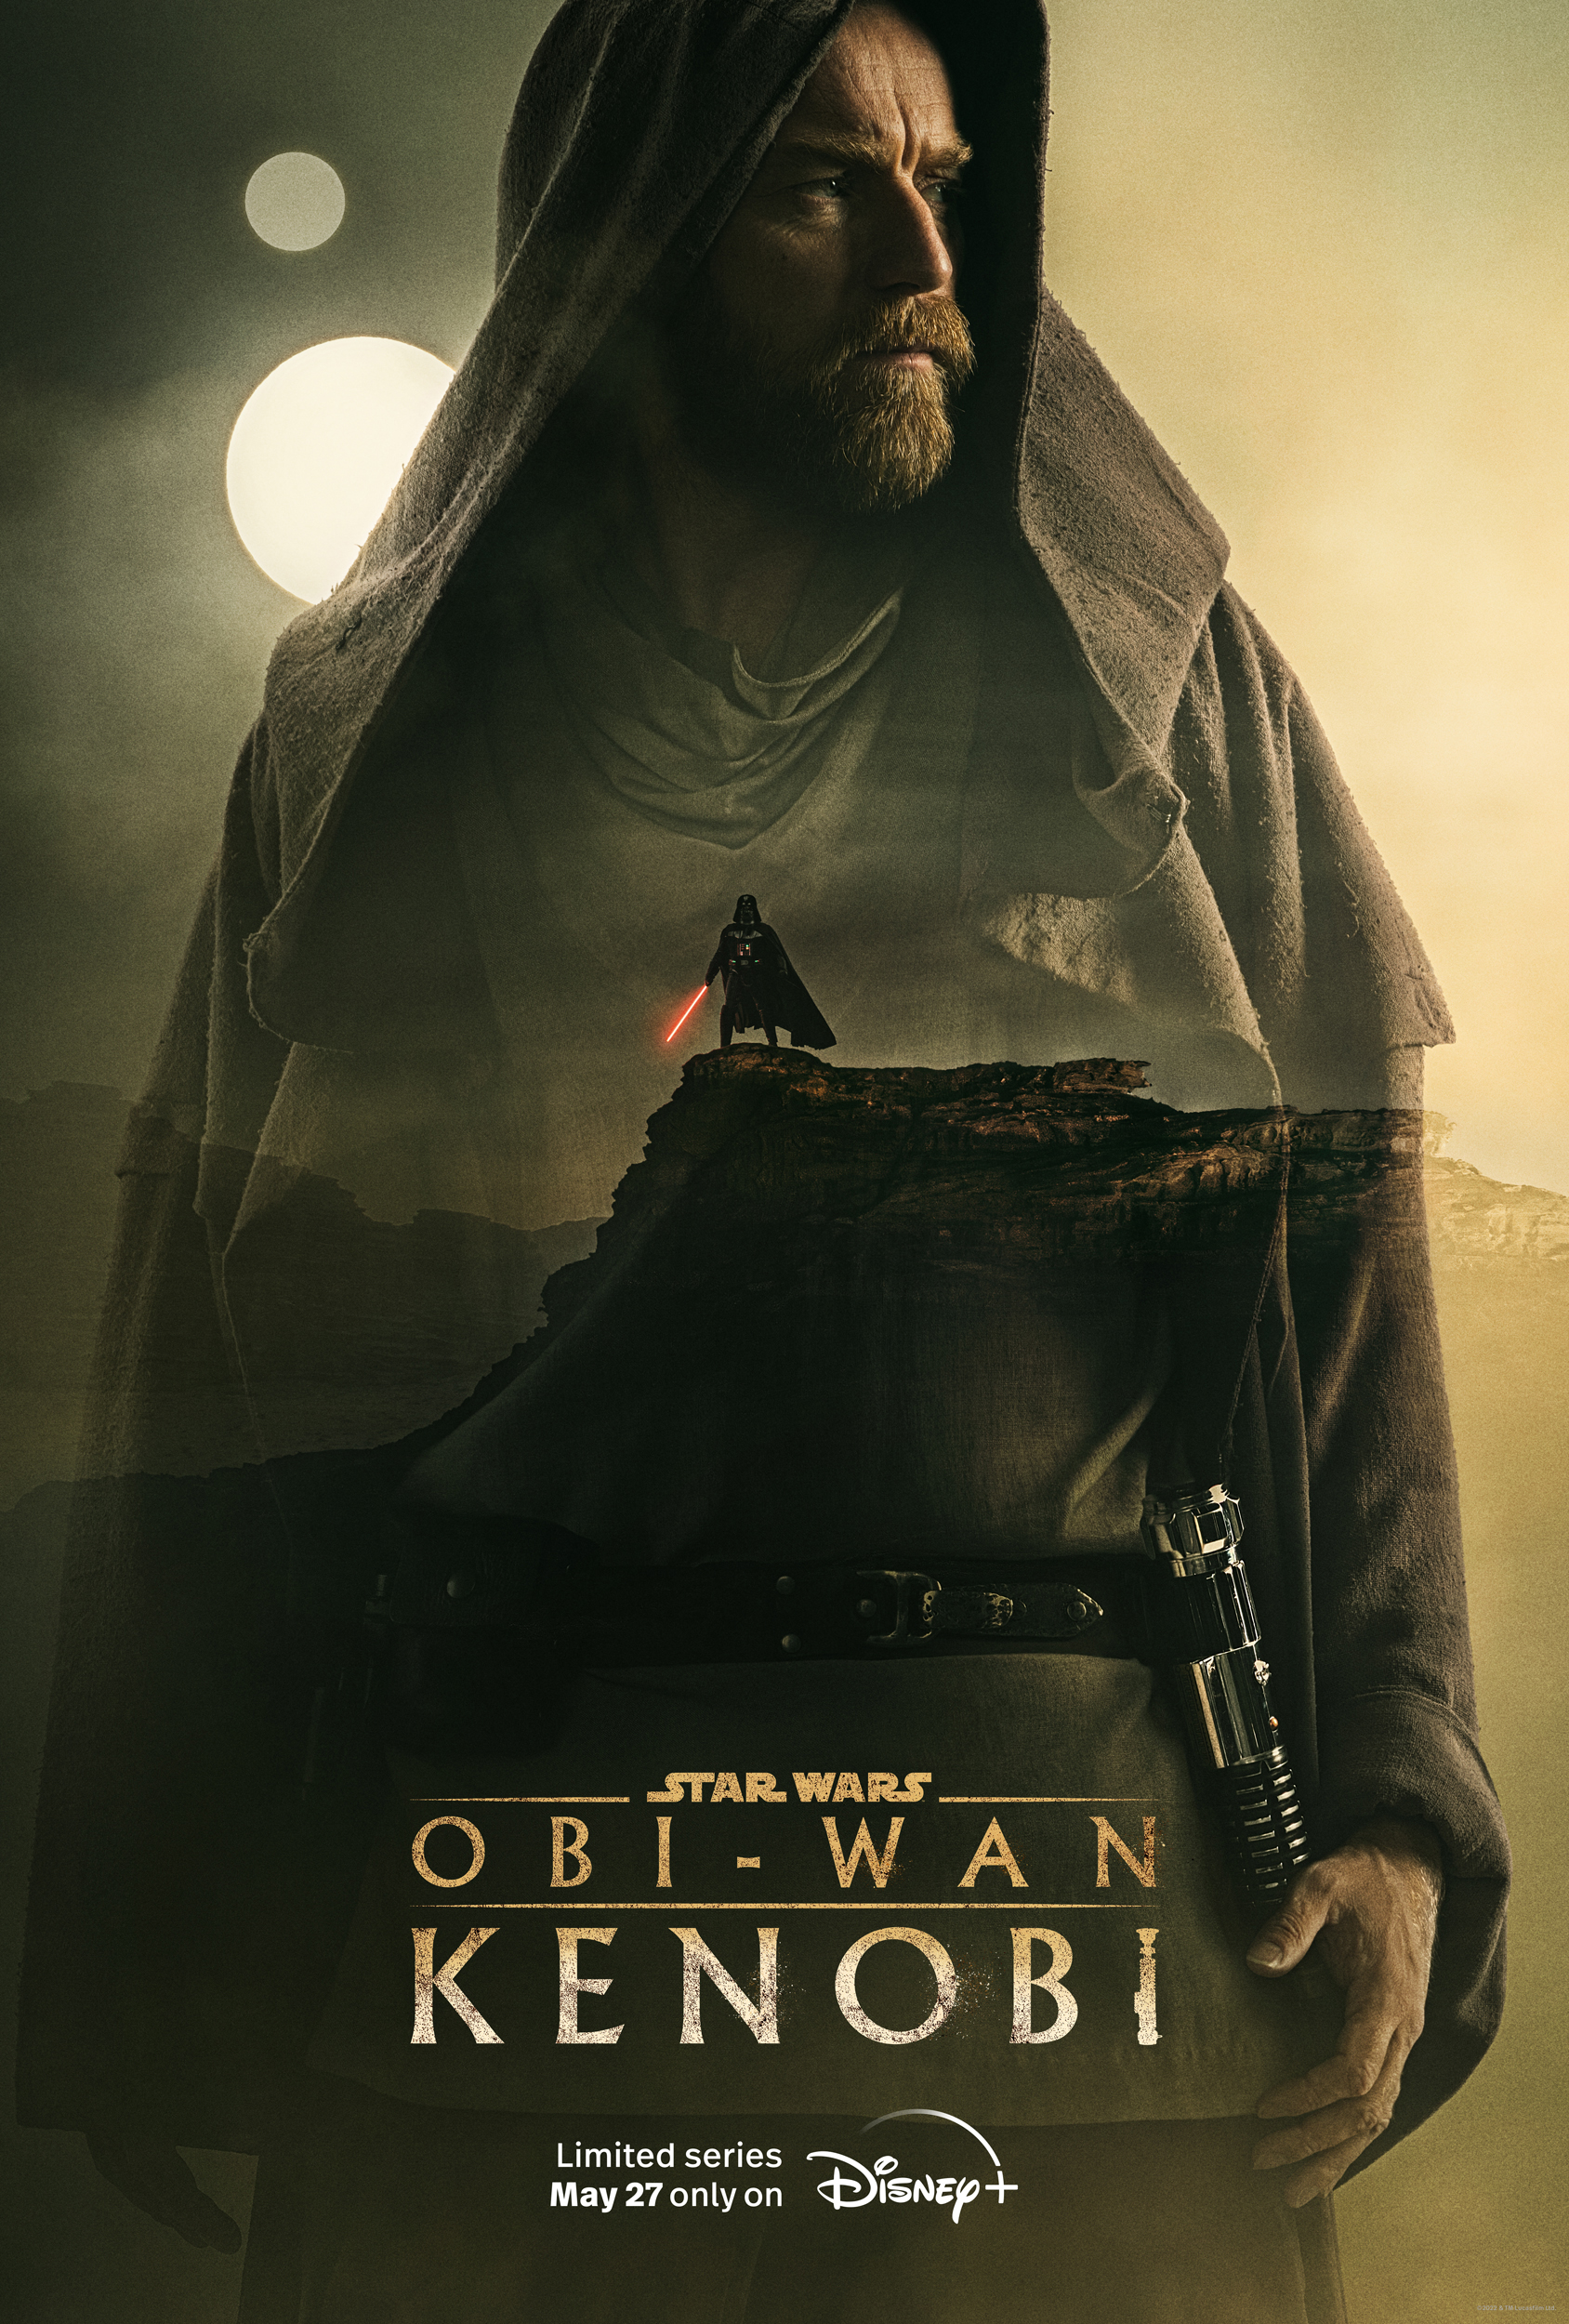 Obi-Wan Kenobi S01E05 [WebRip][1080p] = CSFD 70%